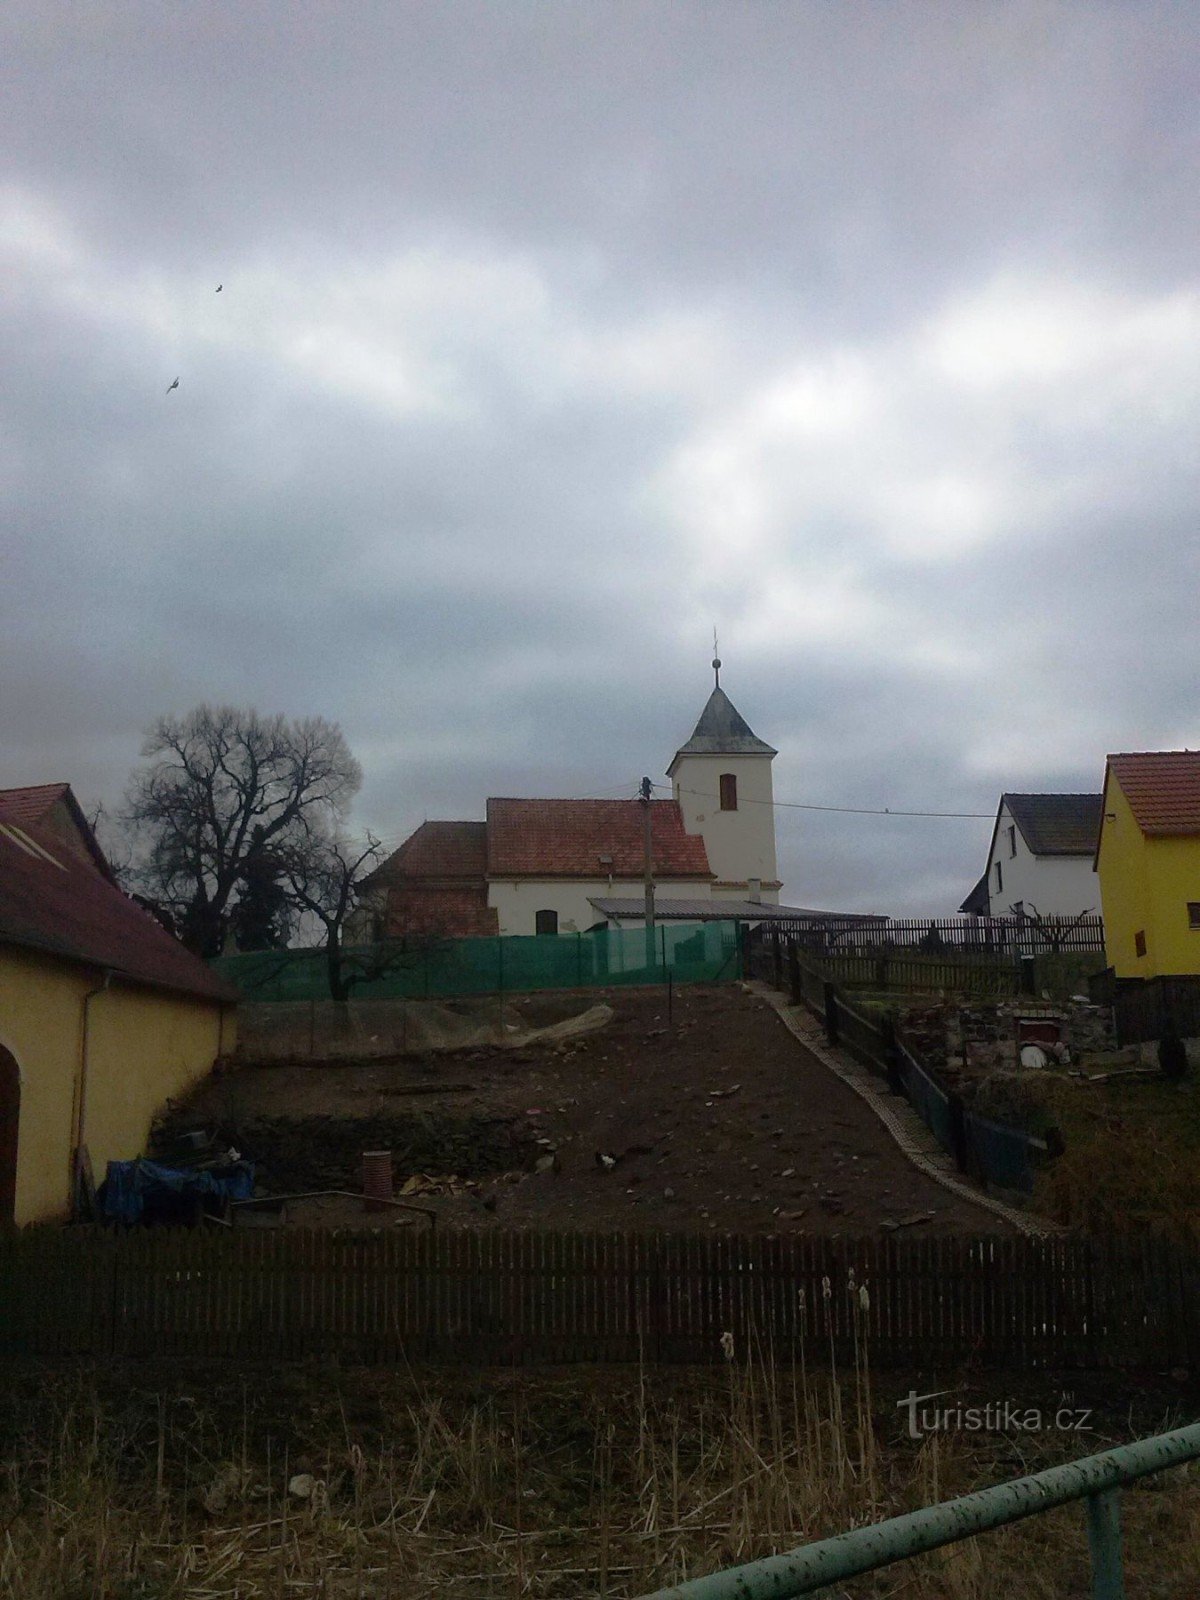 1. Brozánky - Pyhän Nikolauksen kirkko Václava - näkymä junapysäkiltä